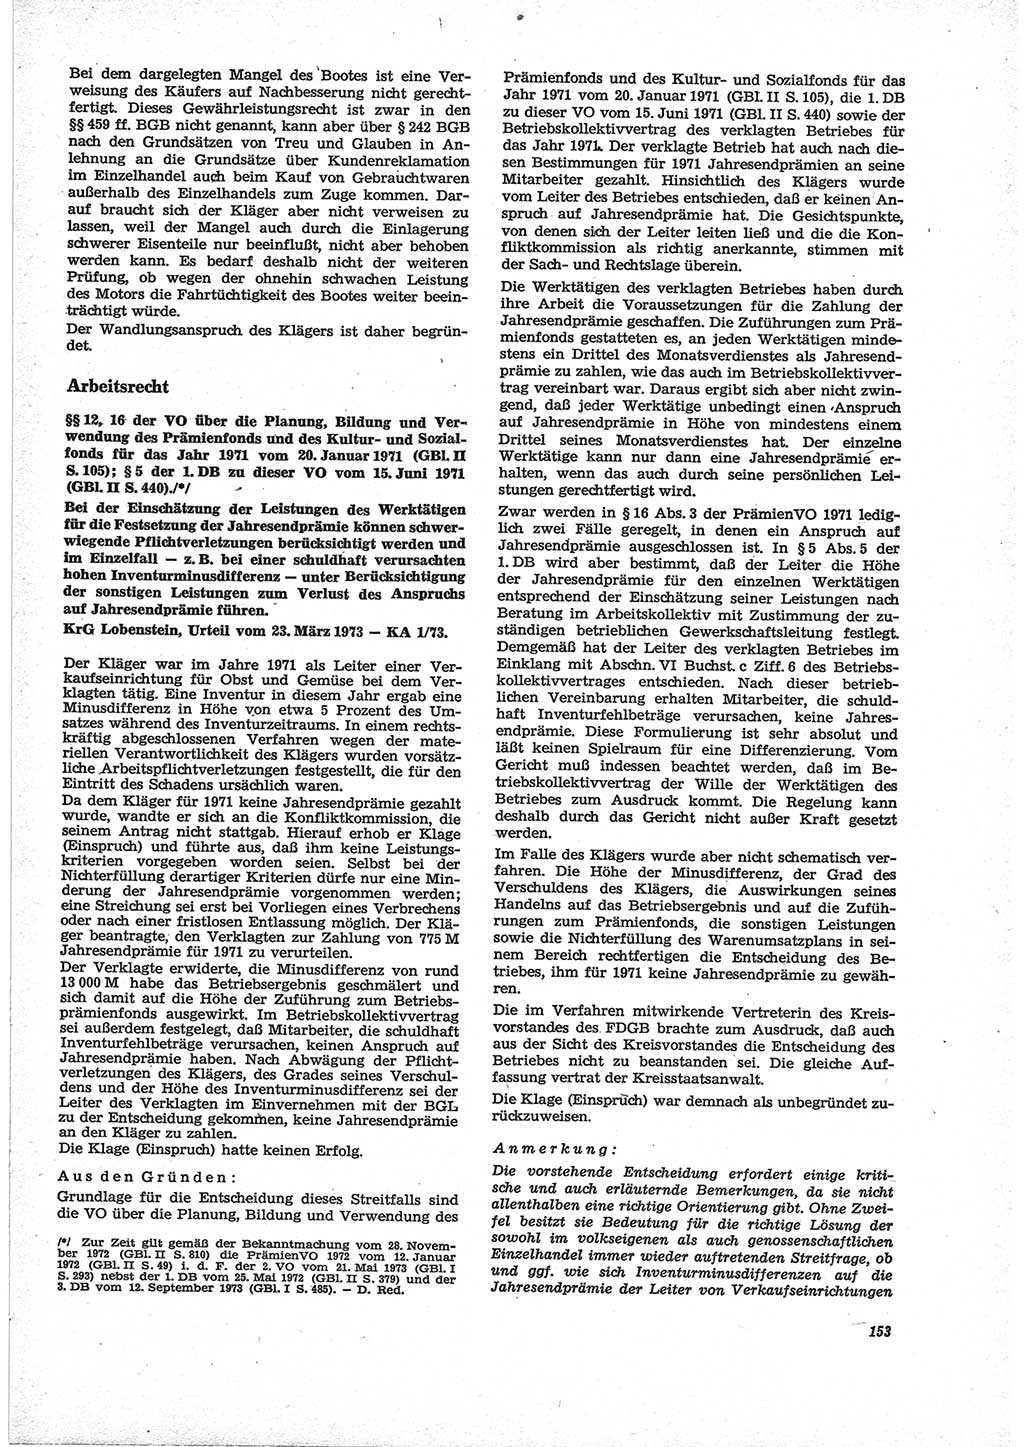 Neue Justiz (NJ), Zeitschrift für Recht und Rechtswissenschaft [Deutsche Demokratische Republik (DDR)], 28. Jahrgang 1974, Seite 153 (NJ DDR 1974, S. 153)